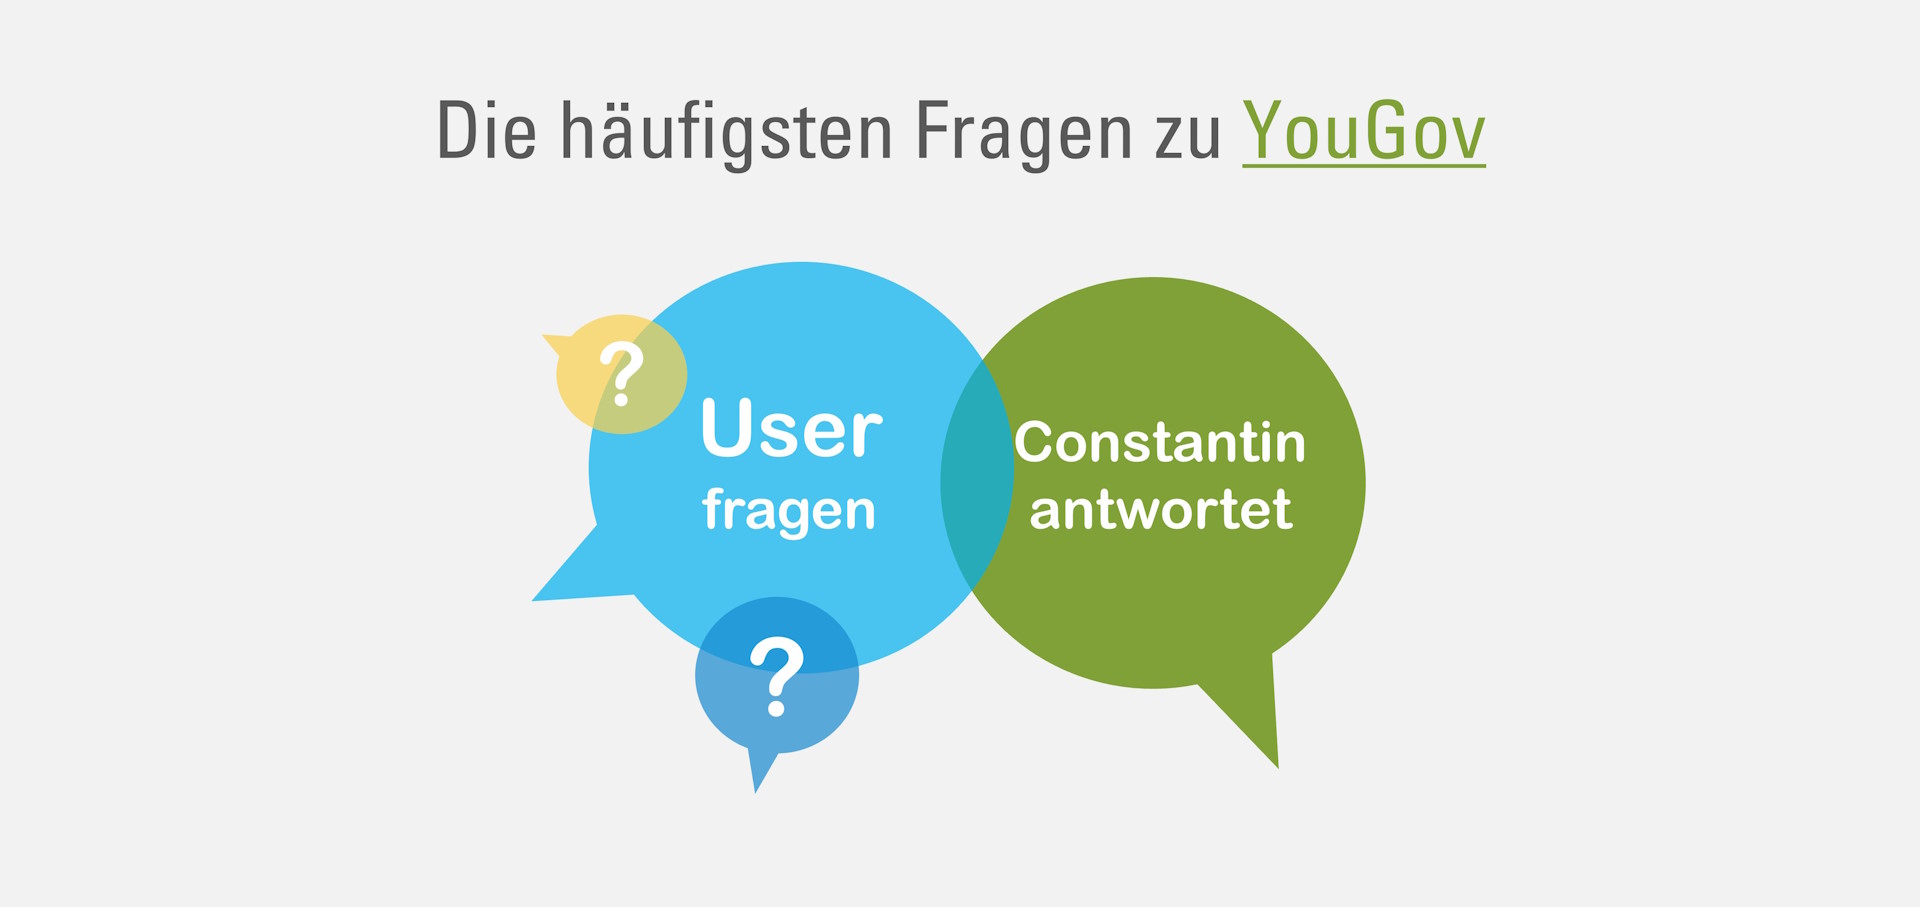 Die häufigsten Fragen zu YouGov. User fragen. Constatin vn Umfrage4mat.de Antwortet